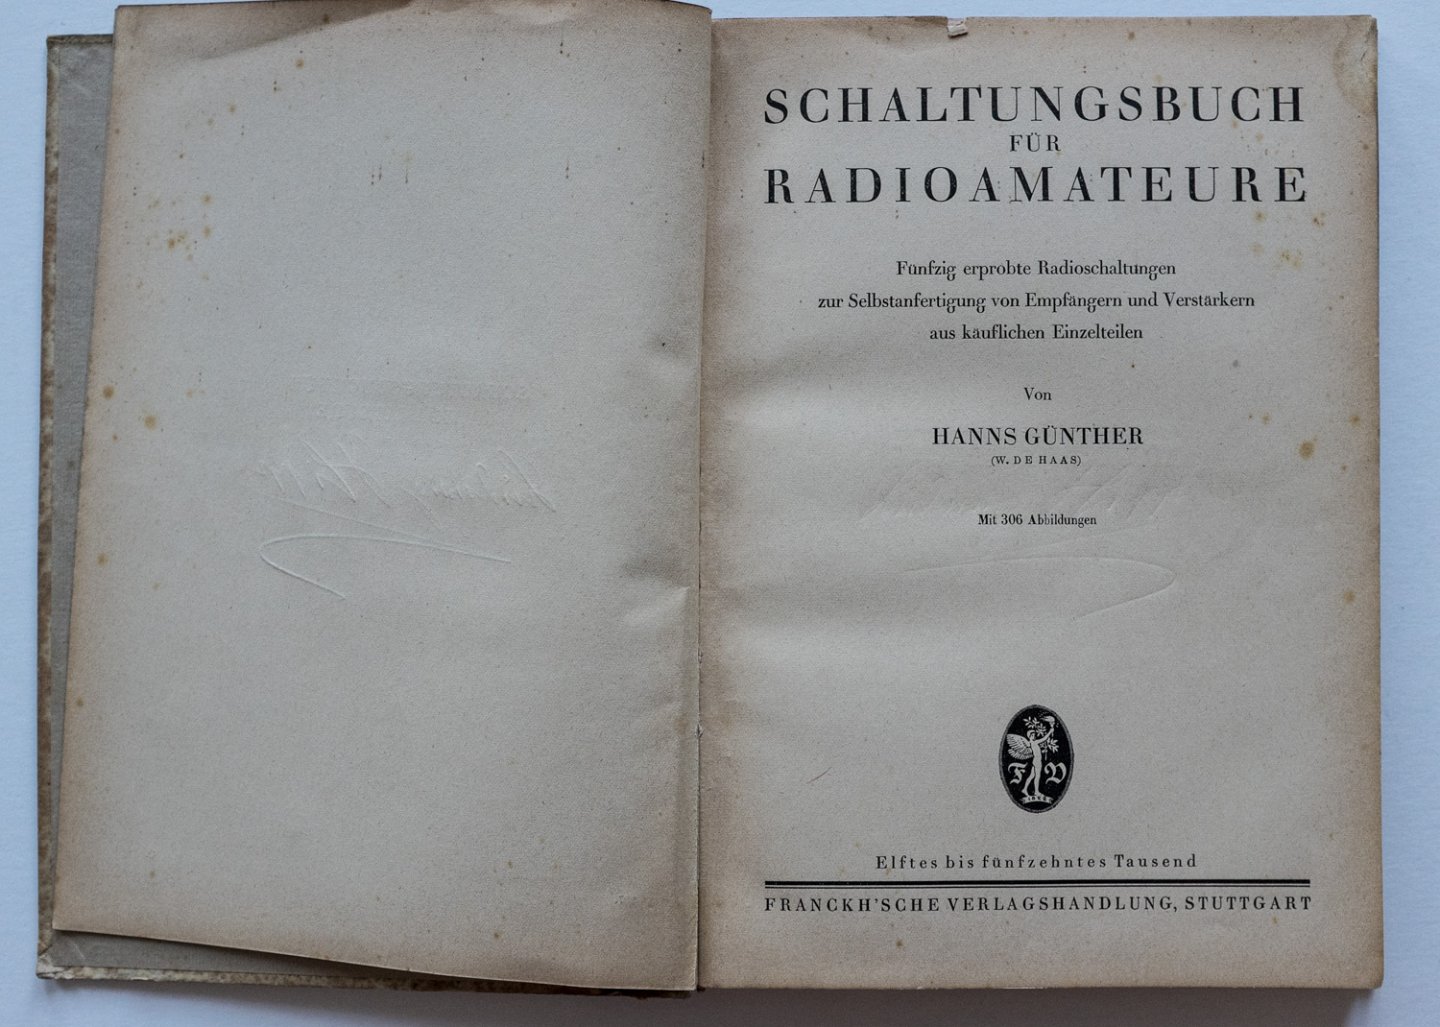 Günther, Hanns - Schaltungsbuch für Radioamateure, 50 erprobte Radioschaltungen zur Selbstanfertigung von Empfängern und Verstärkern aus käuflichen Einzelteilen